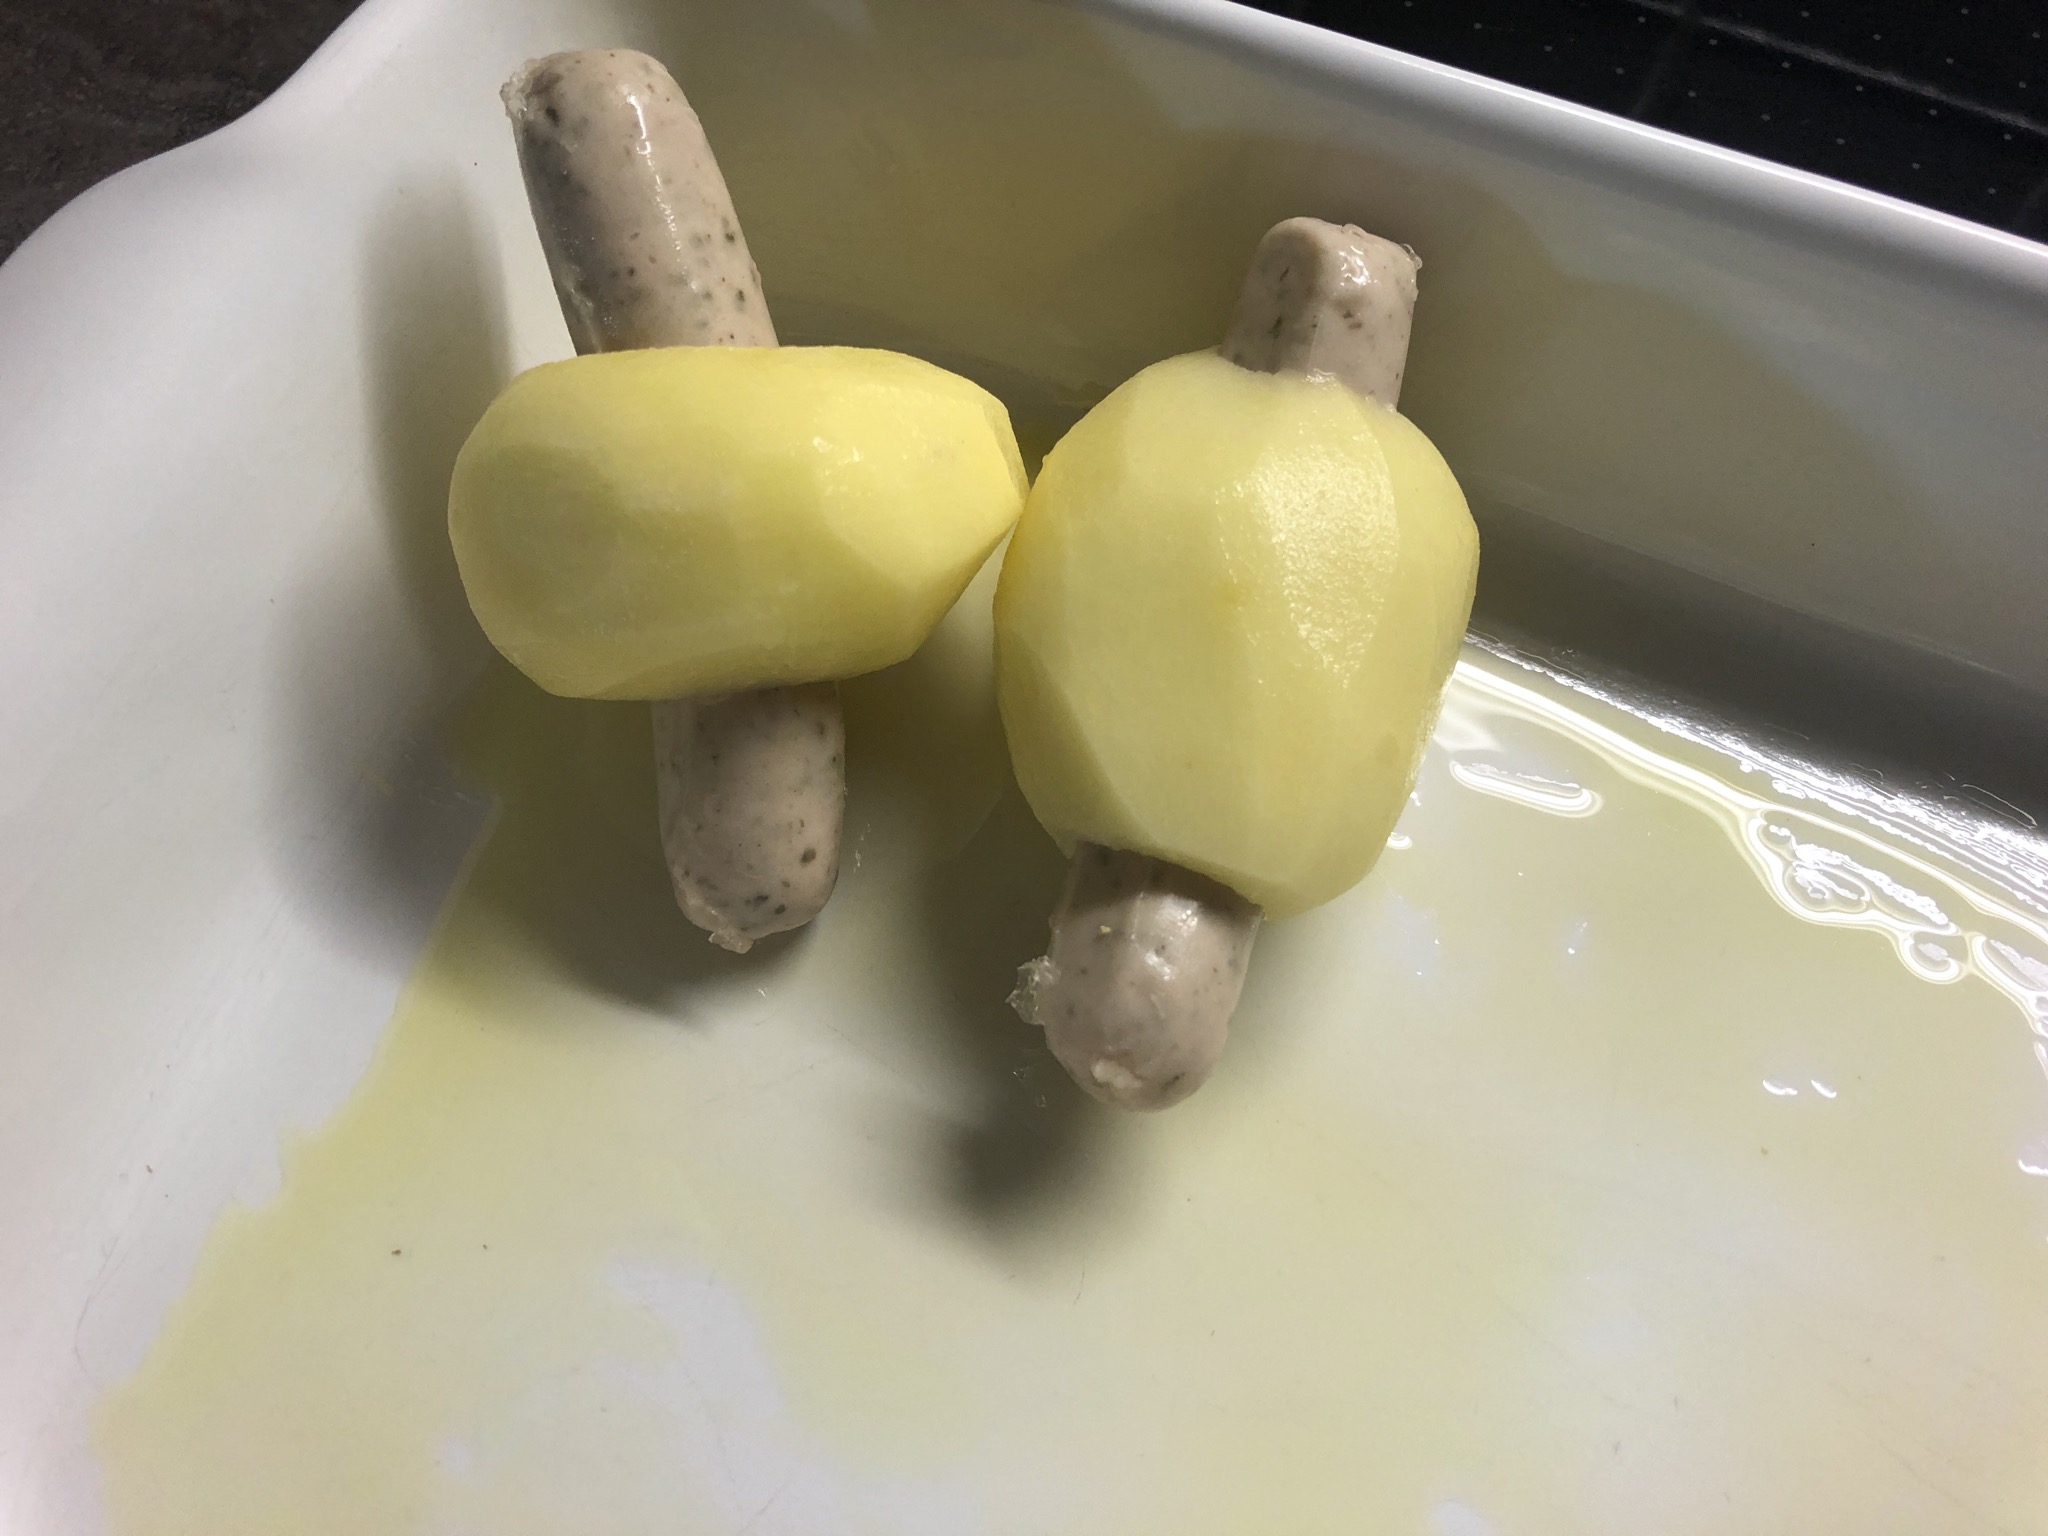 2. Bild zum Schritt 9 für das Bastel- und DIY-Abenteuer für Kinder: 'Eine Auflaufform mit Olivenöl einpinseln und die Kartoffel-Würstchen hineinlegen.'